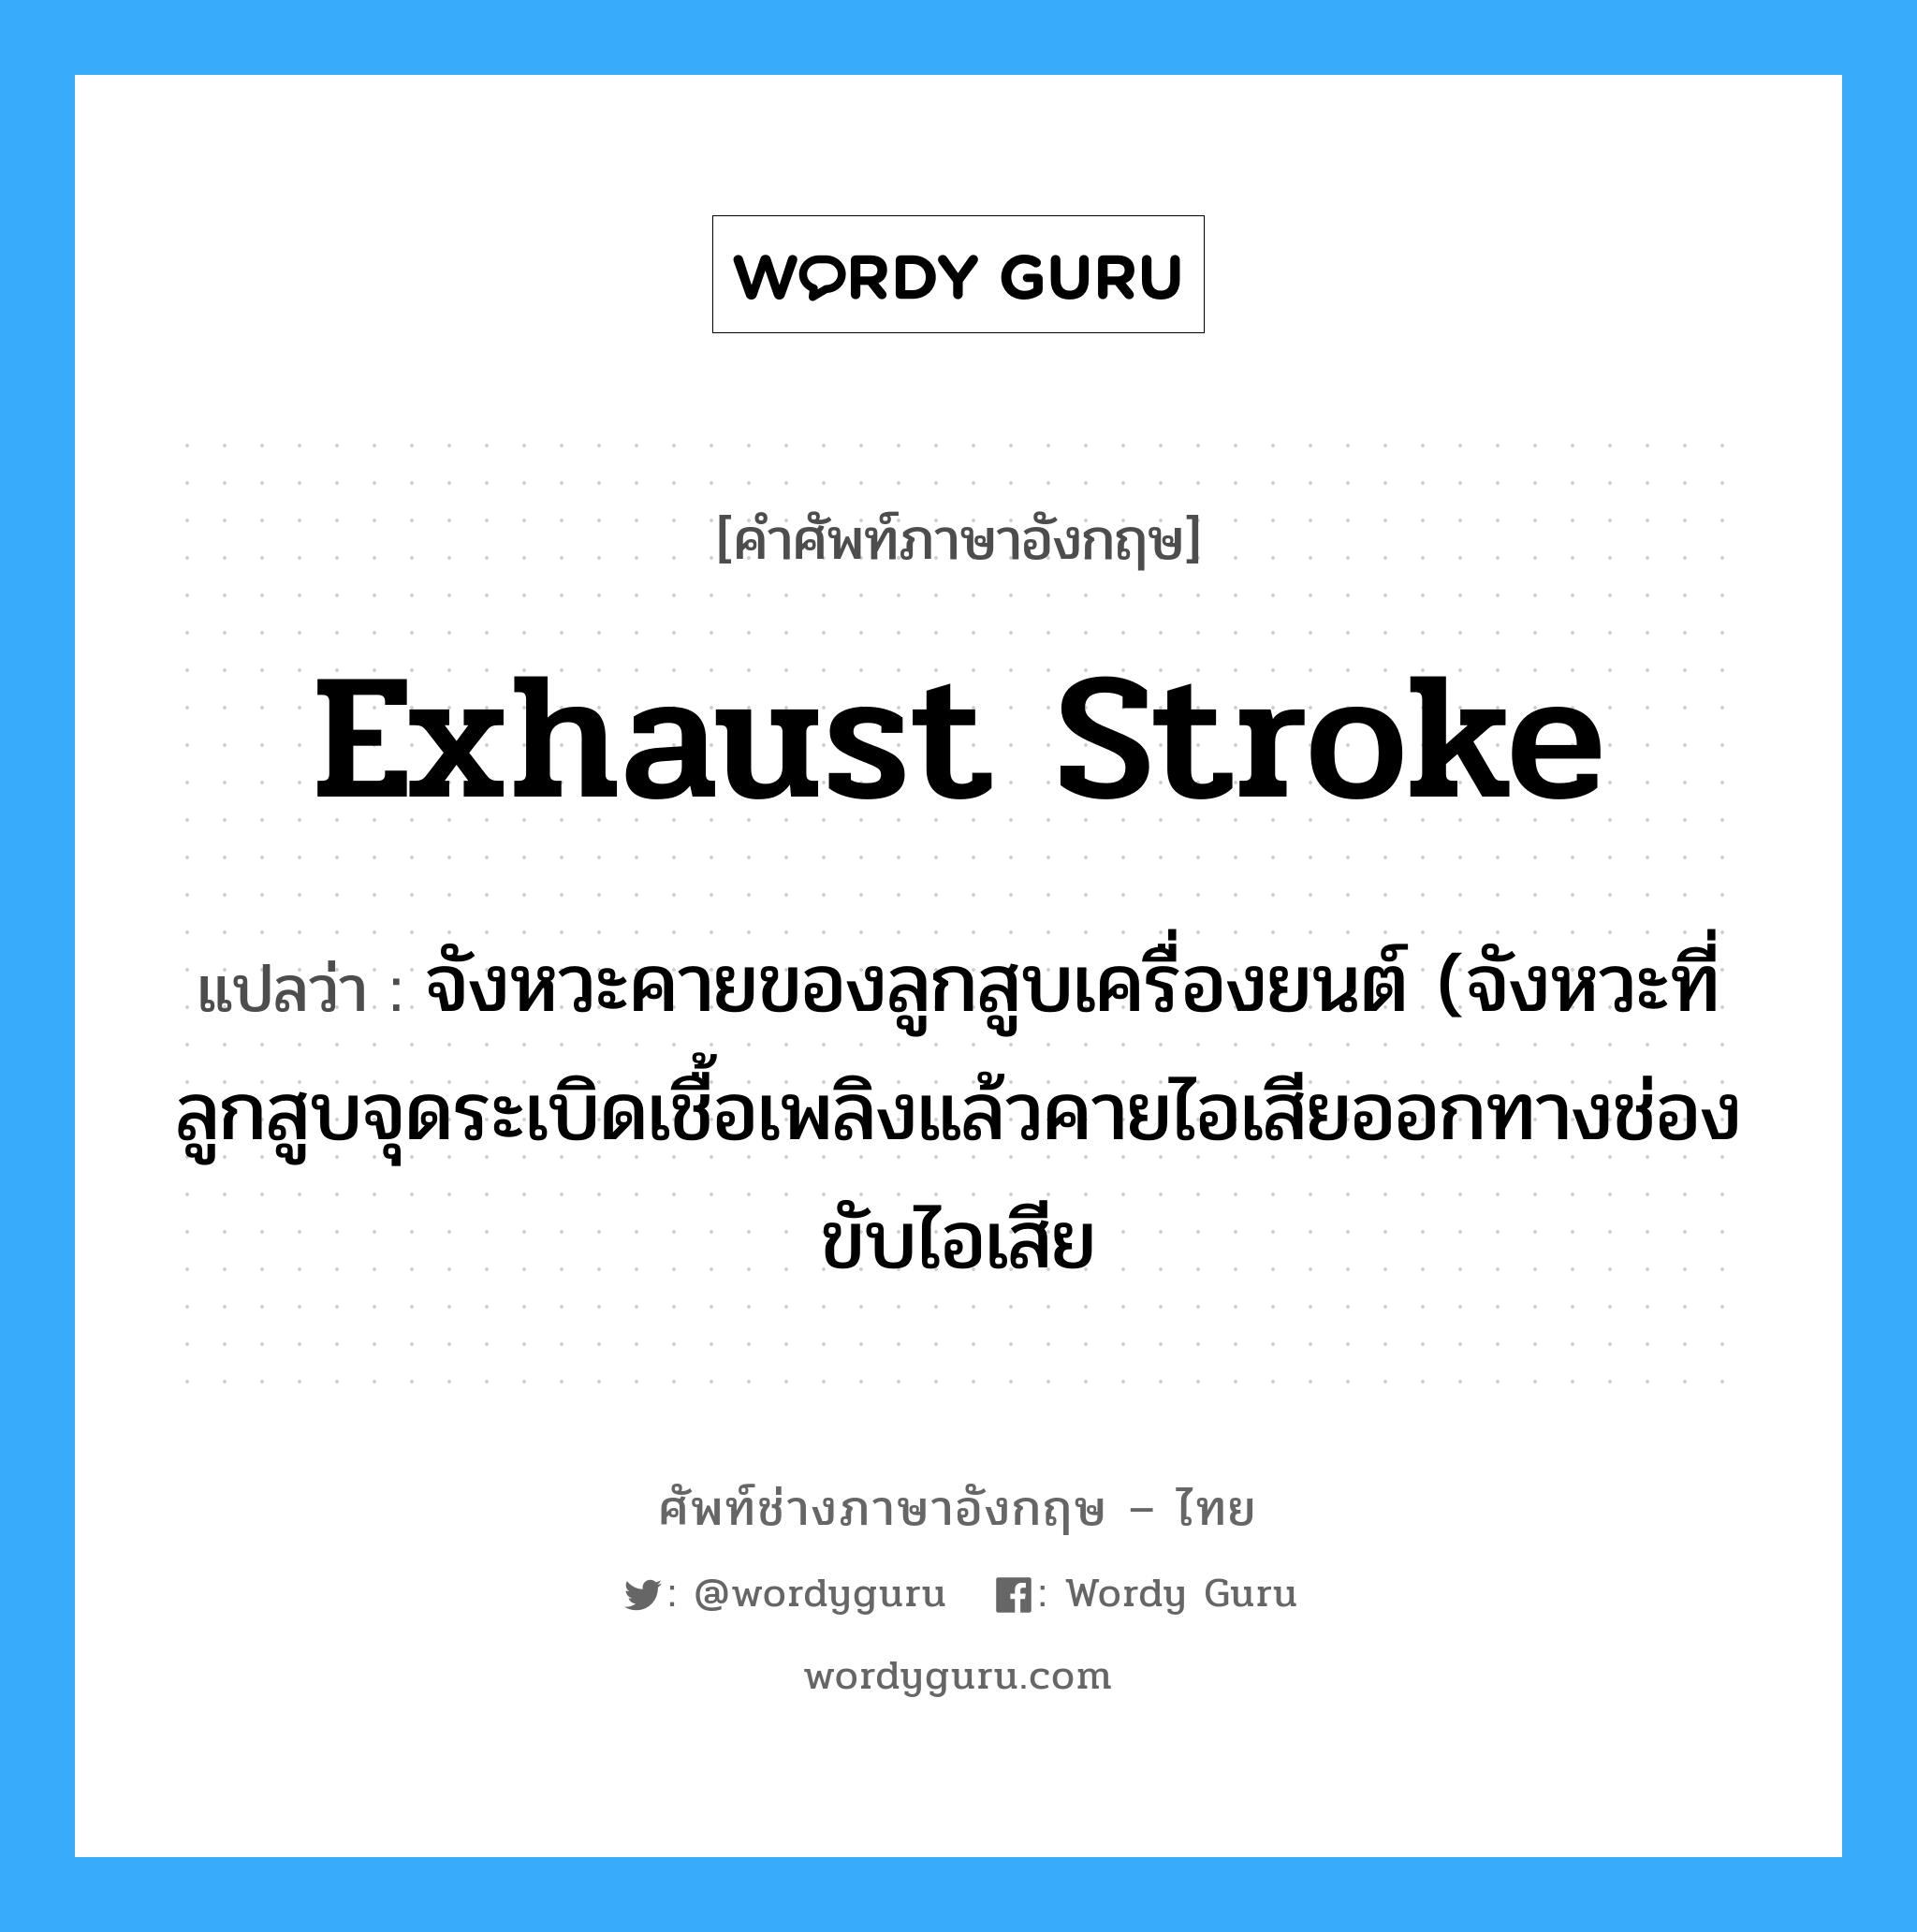 exhaust stroke แปลว่า?, คำศัพท์ช่างภาษาอังกฤษ - ไทย exhaust stroke คำศัพท์ภาษาอังกฤษ exhaust stroke แปลว่า จังหวะคายของลูกสูบเครื่องยนต์ (จังหวะที่ลูกสูบจุดระเบิดเชื้อเพลิงแล้วคายไอเสียออกทางช่องขับไอเสีย